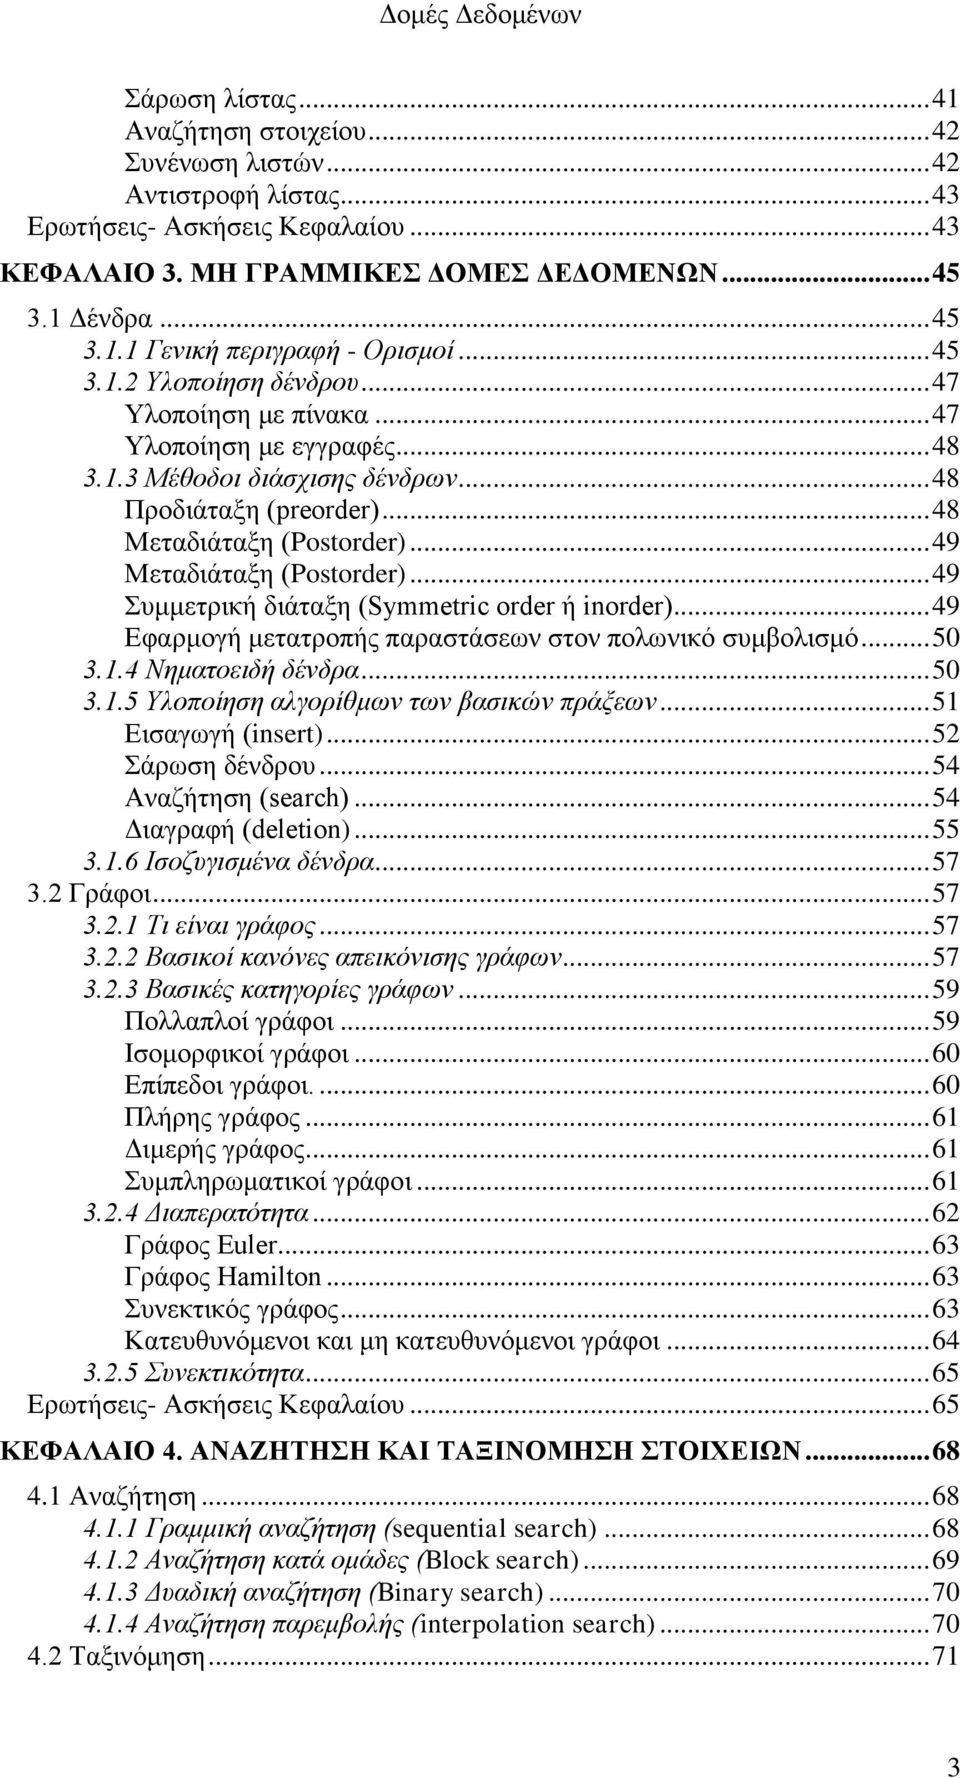 .. 49 Μεταδιάταξη (Postorder)... 49 Συμμετρική διάταξη (Symmetric order ή inorder)... 49 Εφαρμογή μετατροπής παραστάσεων στον πολωνικό συμβολισμό... 50 3.1.4 Νηματοειδή δένδρα... 50 3.1.5 Υλοποίηση αλγορίθμων των βασικών πράξεων.